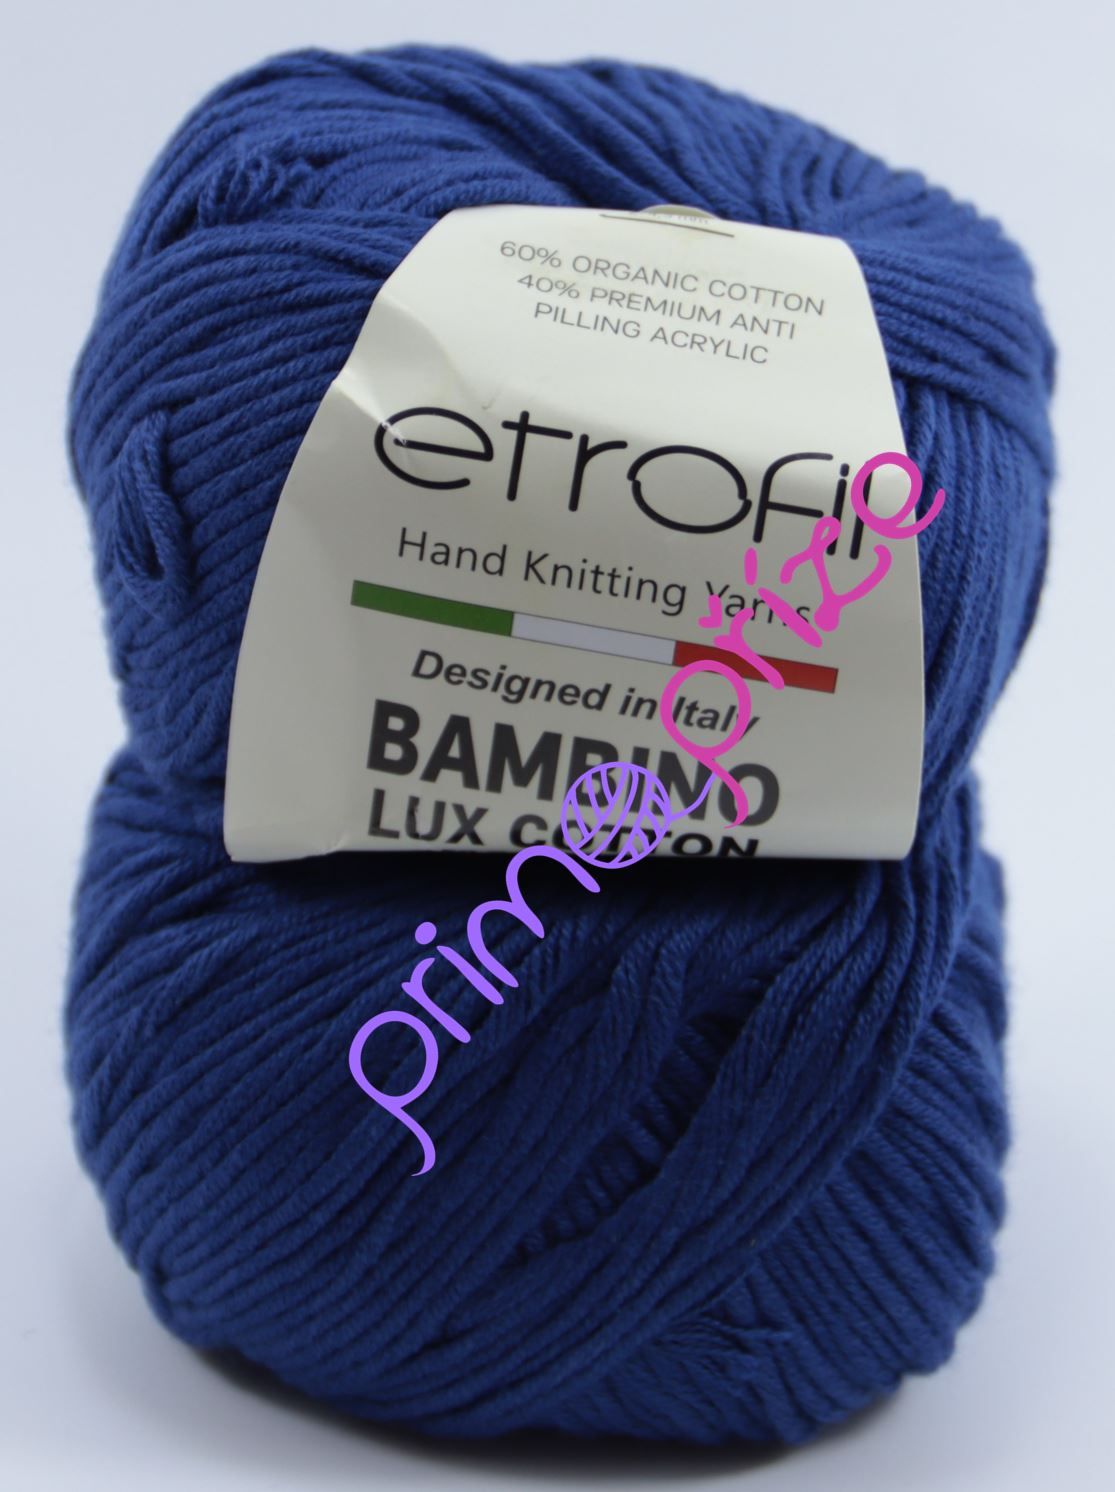 ETROFIL Bambino Lux Cotton 70527 královská modrá